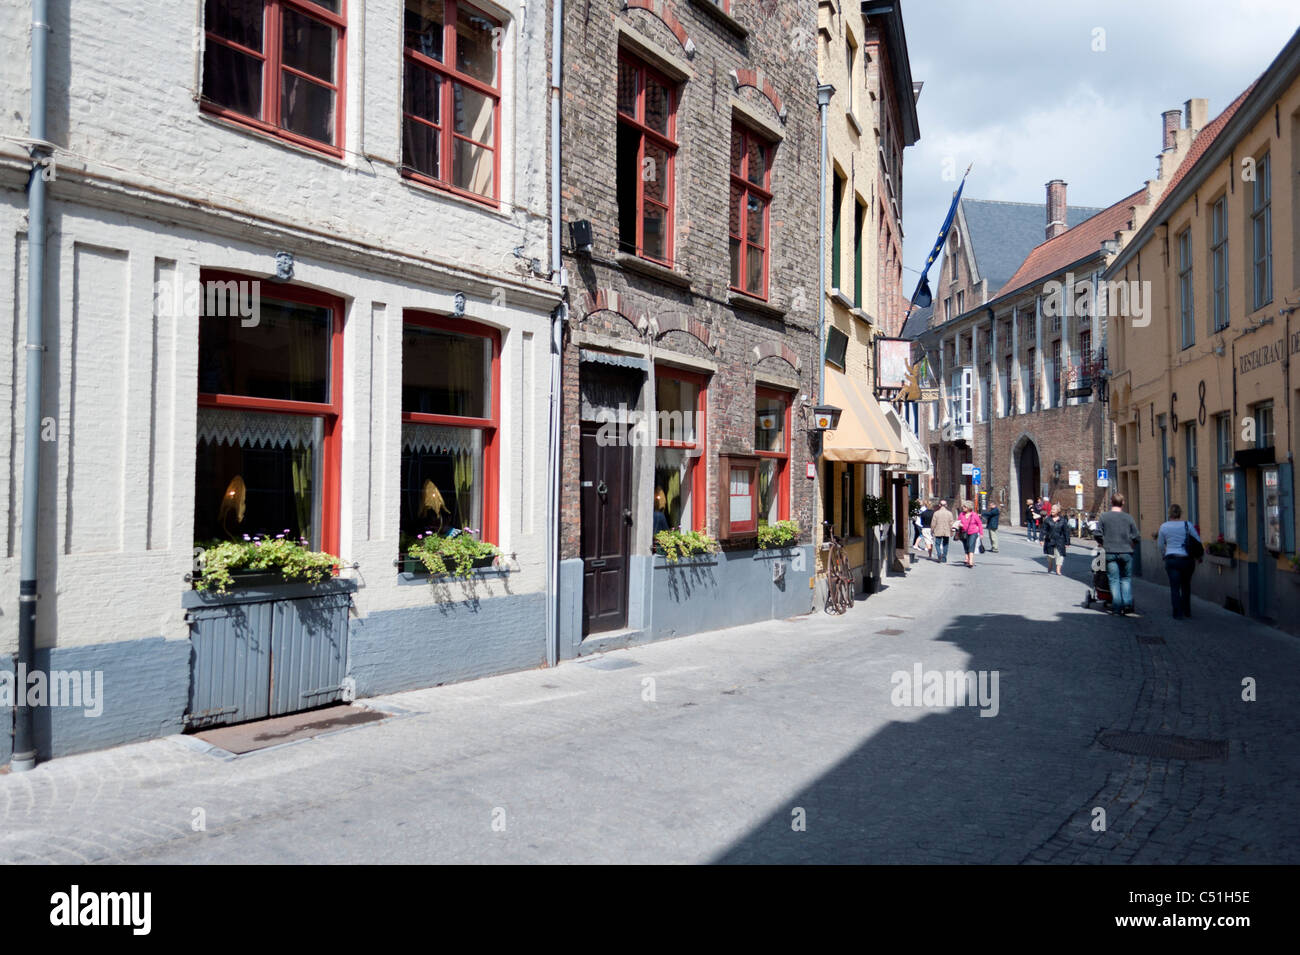 A sunlit quiet street scene in Antwerp, Belgium. Stock Photo